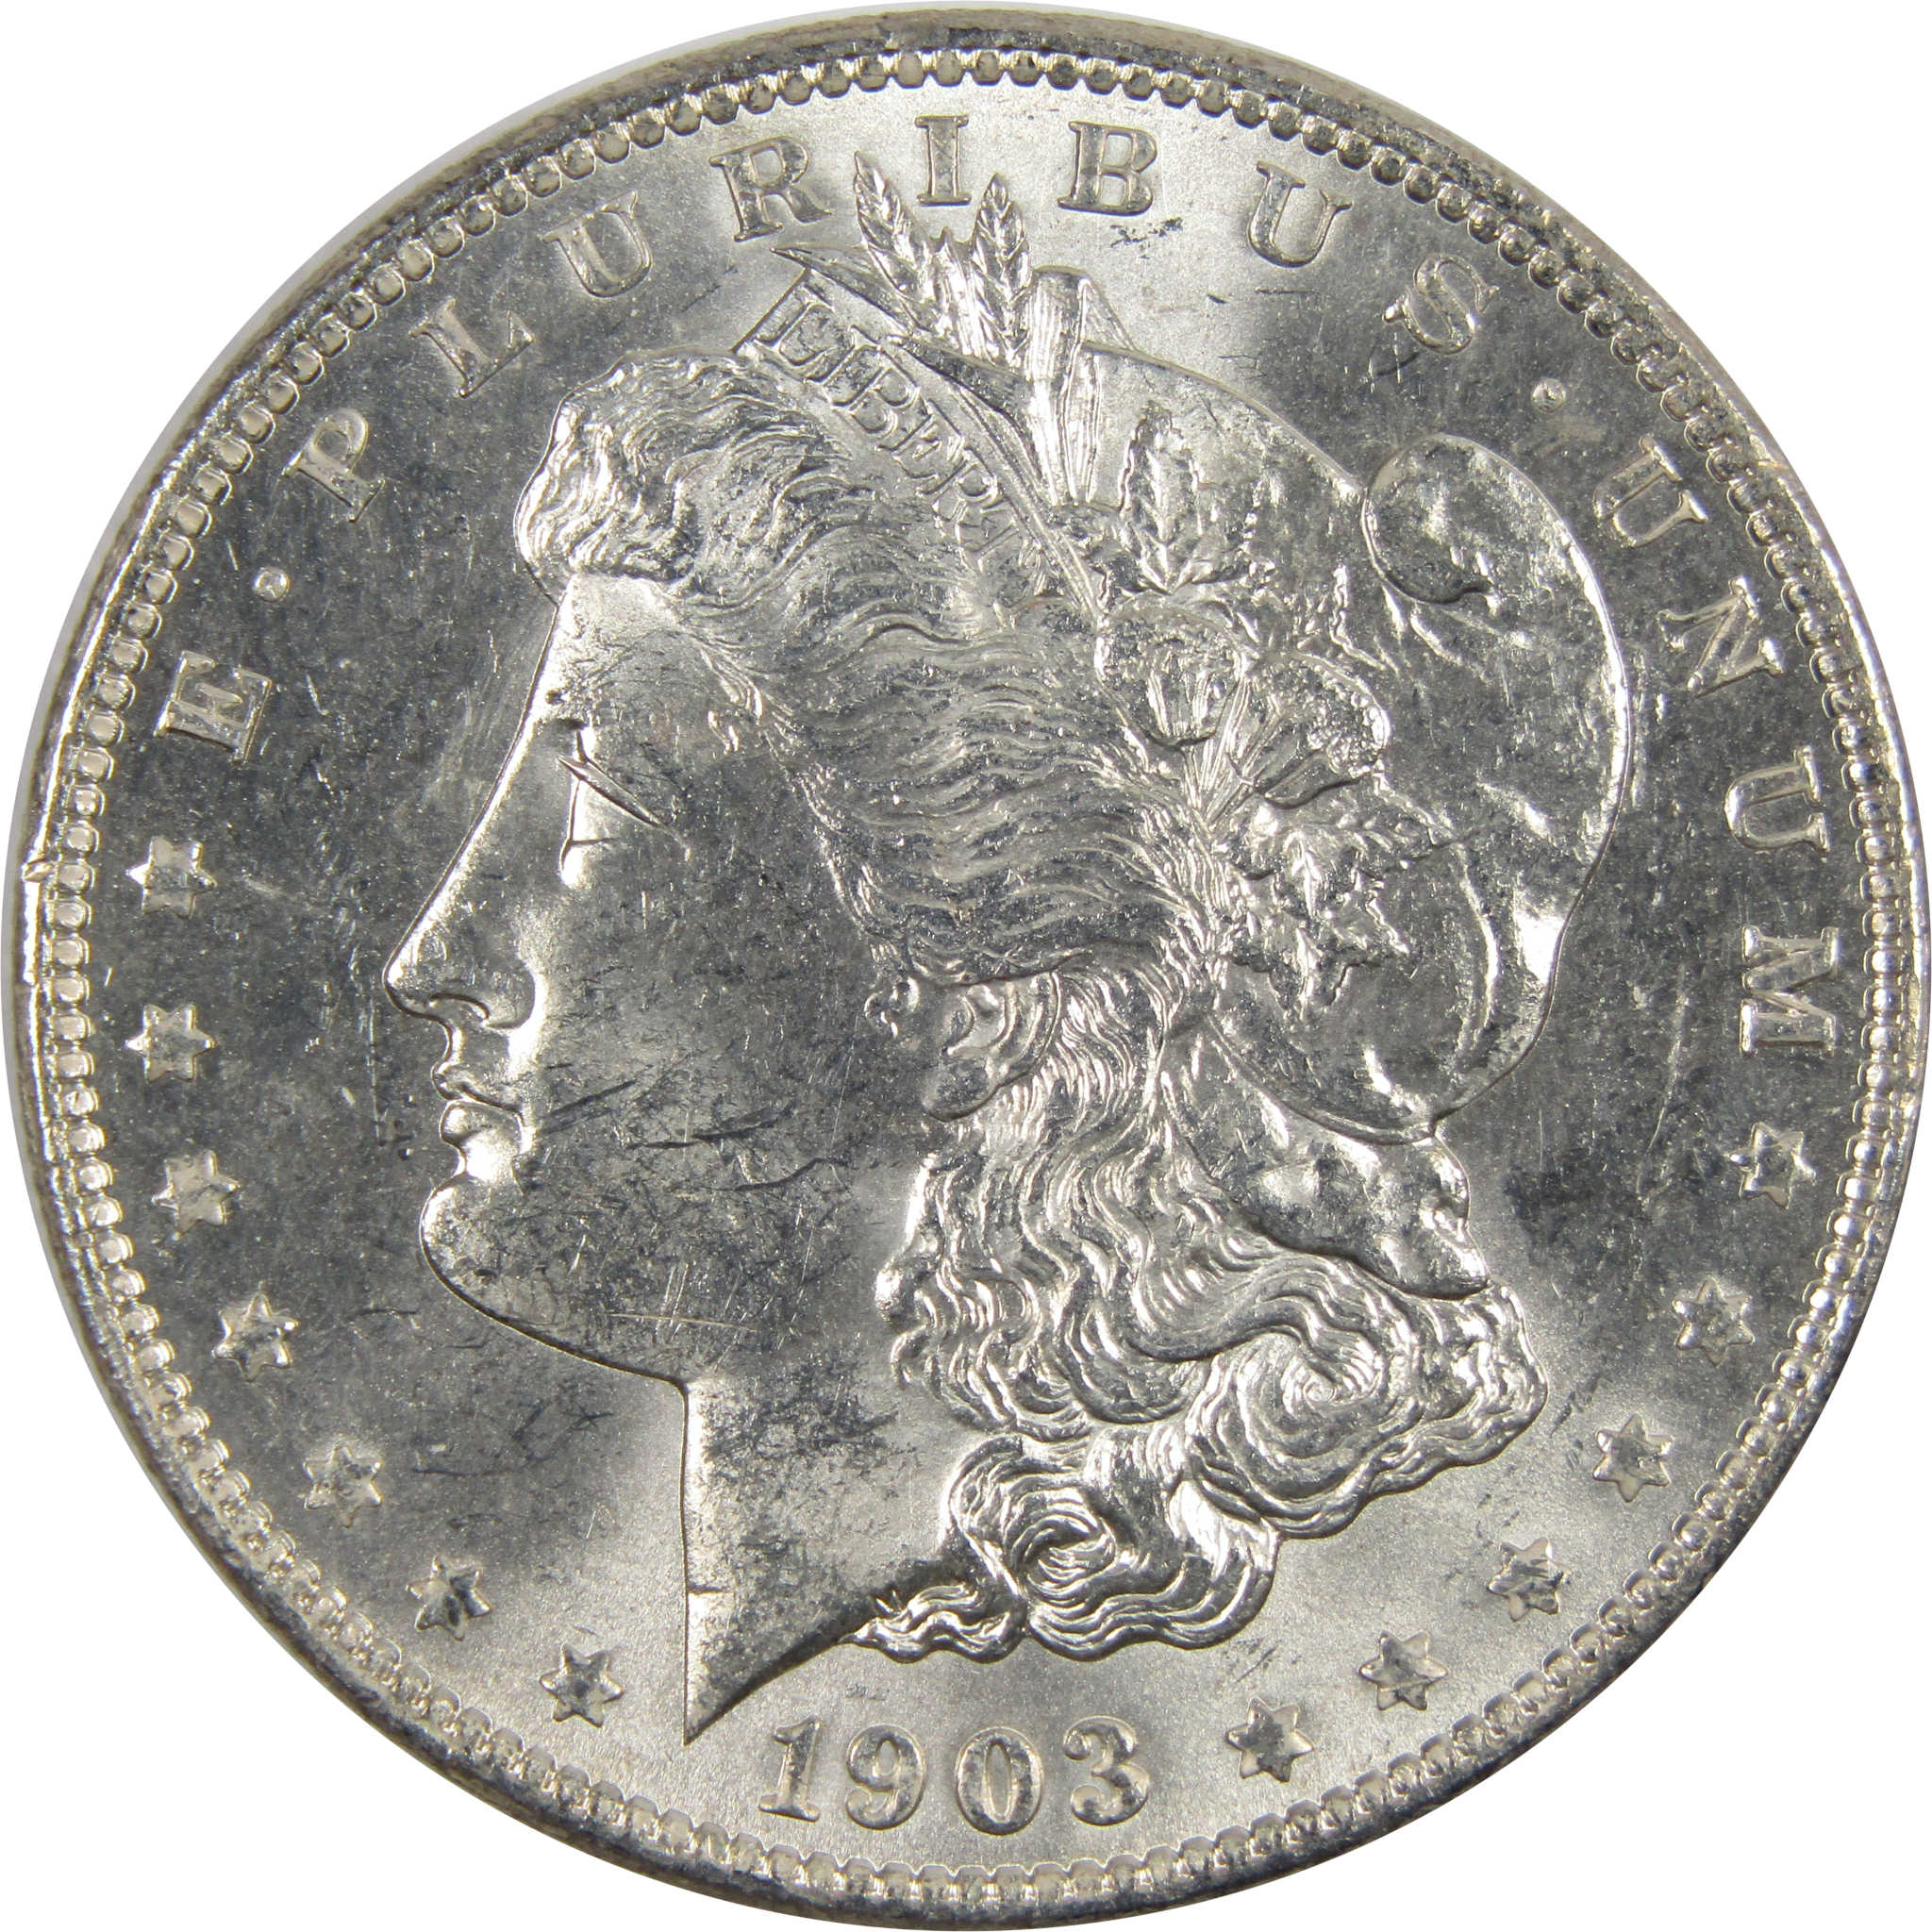 1903 O Morgan Dollar BU Choice Uncirculated 90% Silver $1 SKU:I7907 - Morgan coin - Morgan silver dollar - Morgan silver dollar for sale - Profile Coins &amp; Collectibles